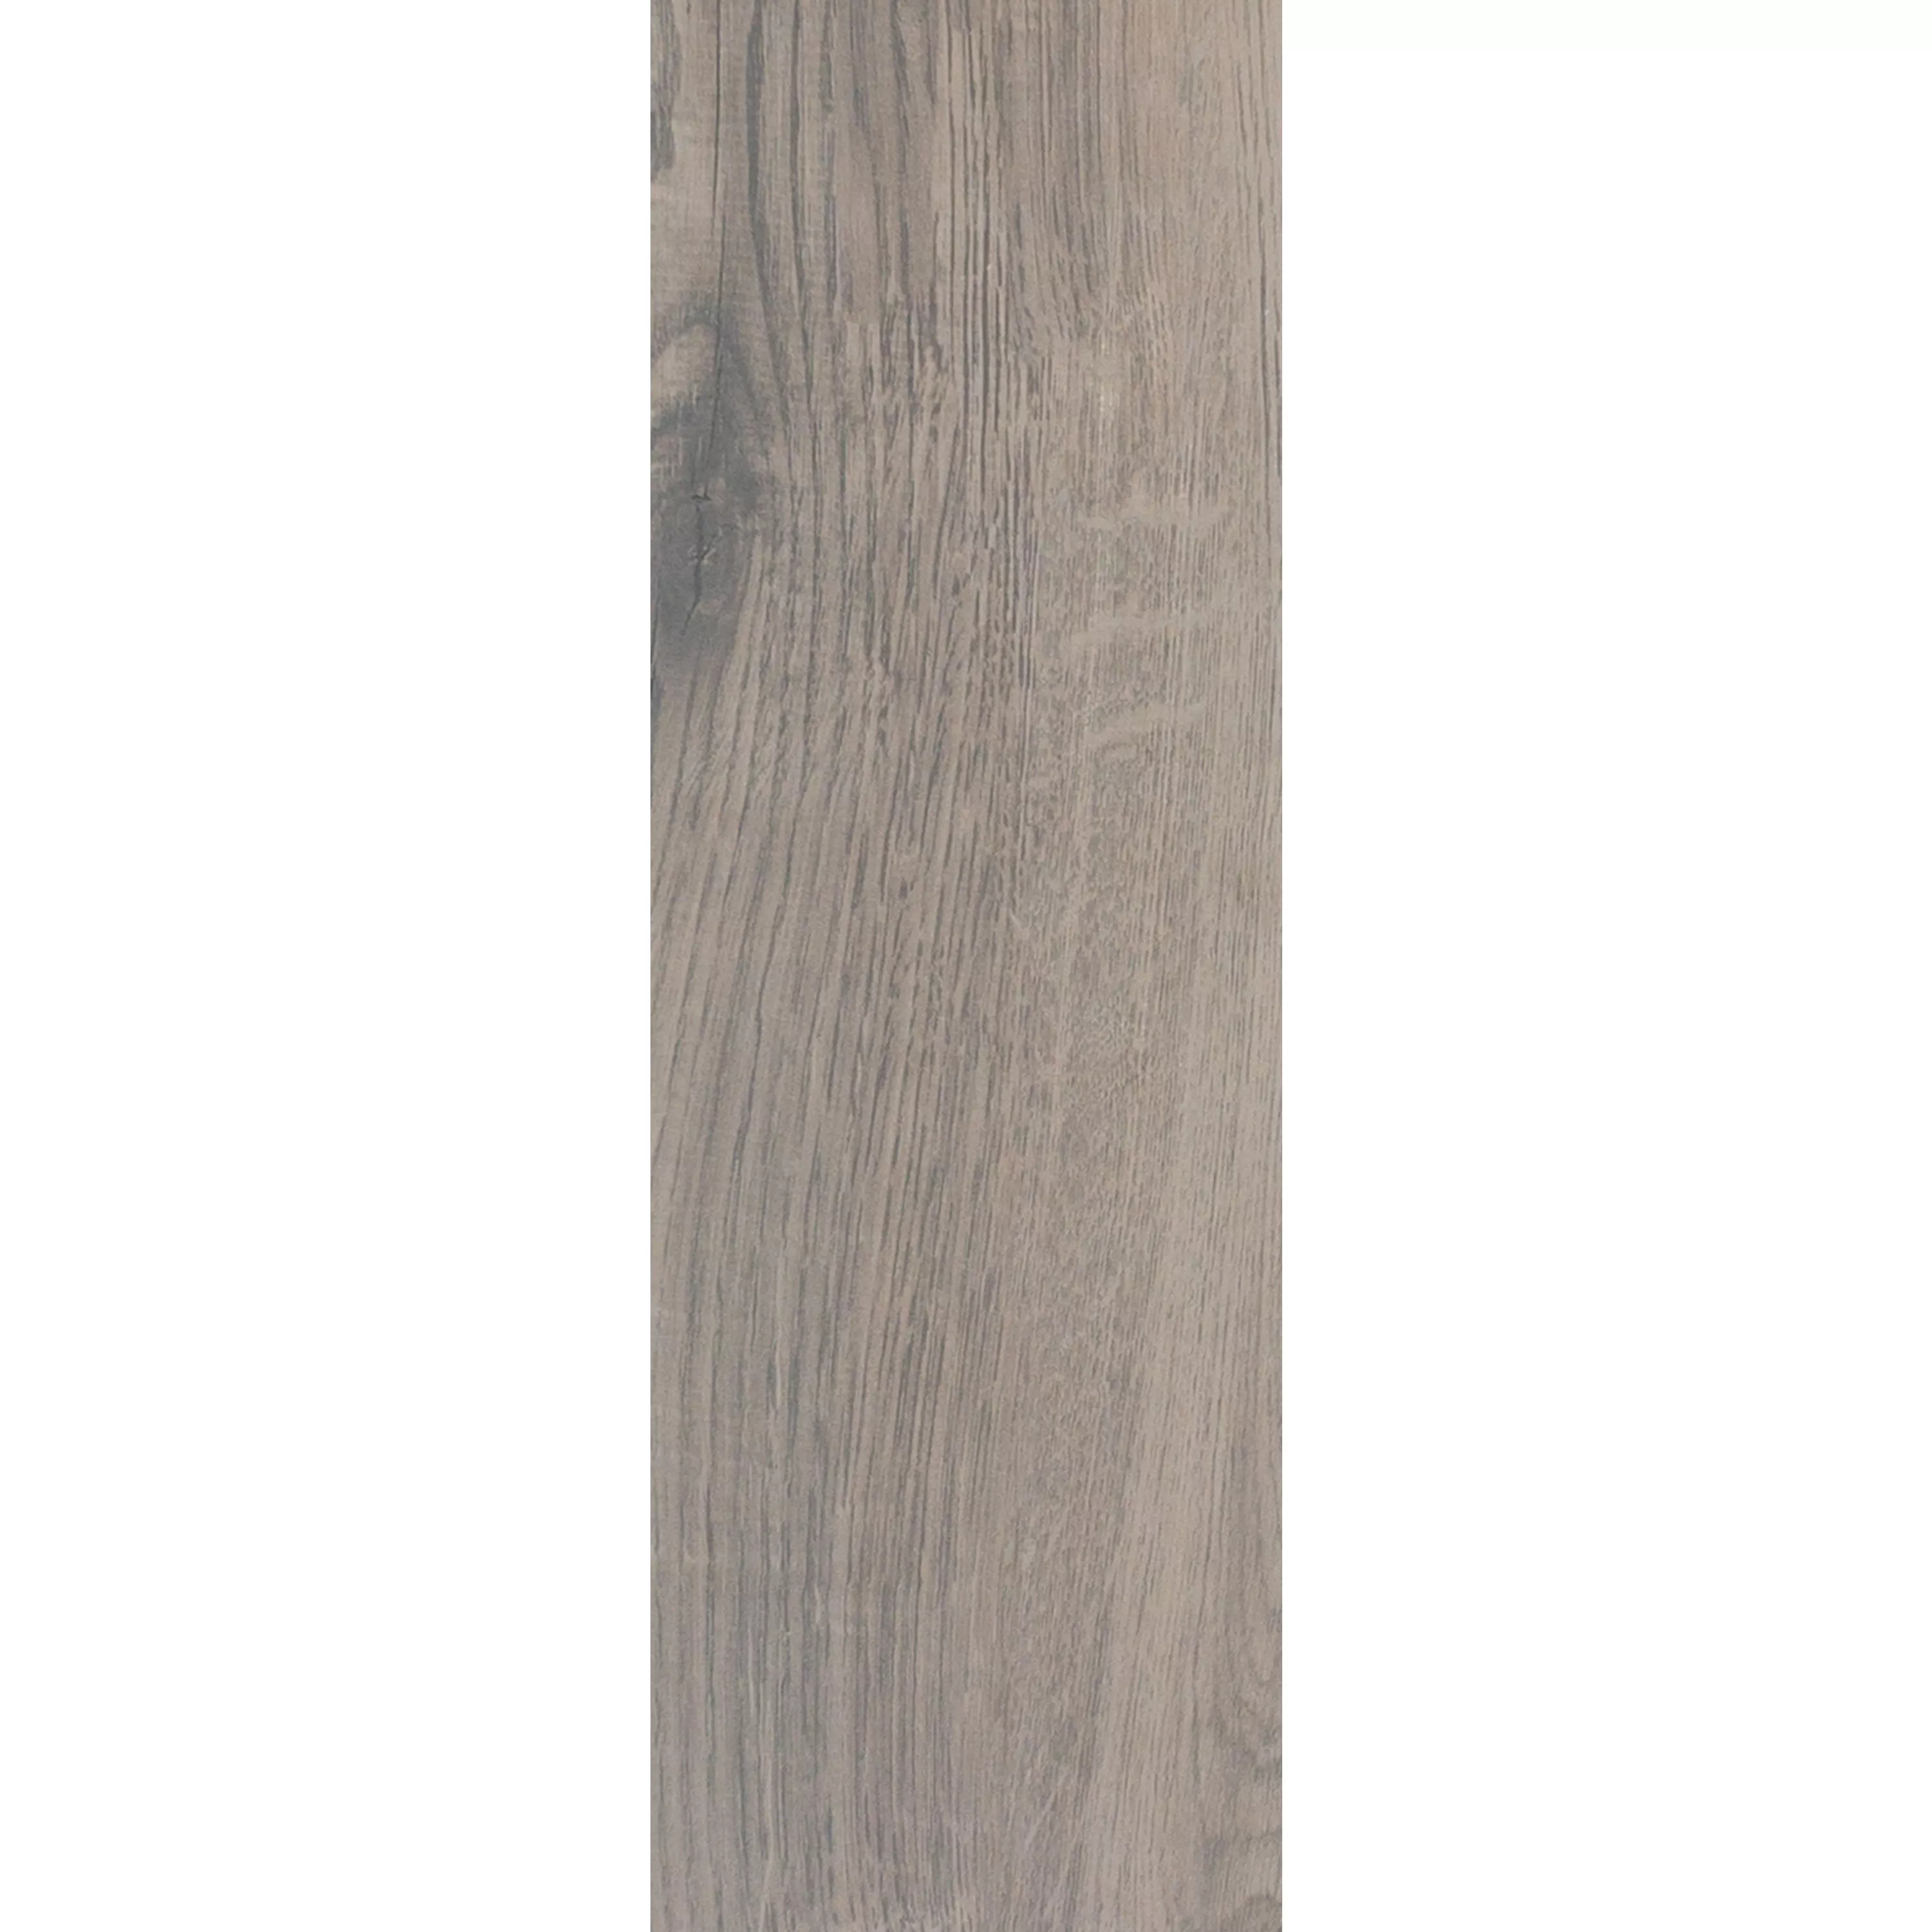 Płytki Podłogowe Wygląd Drewna Fullwood Brązowy 20x120cm